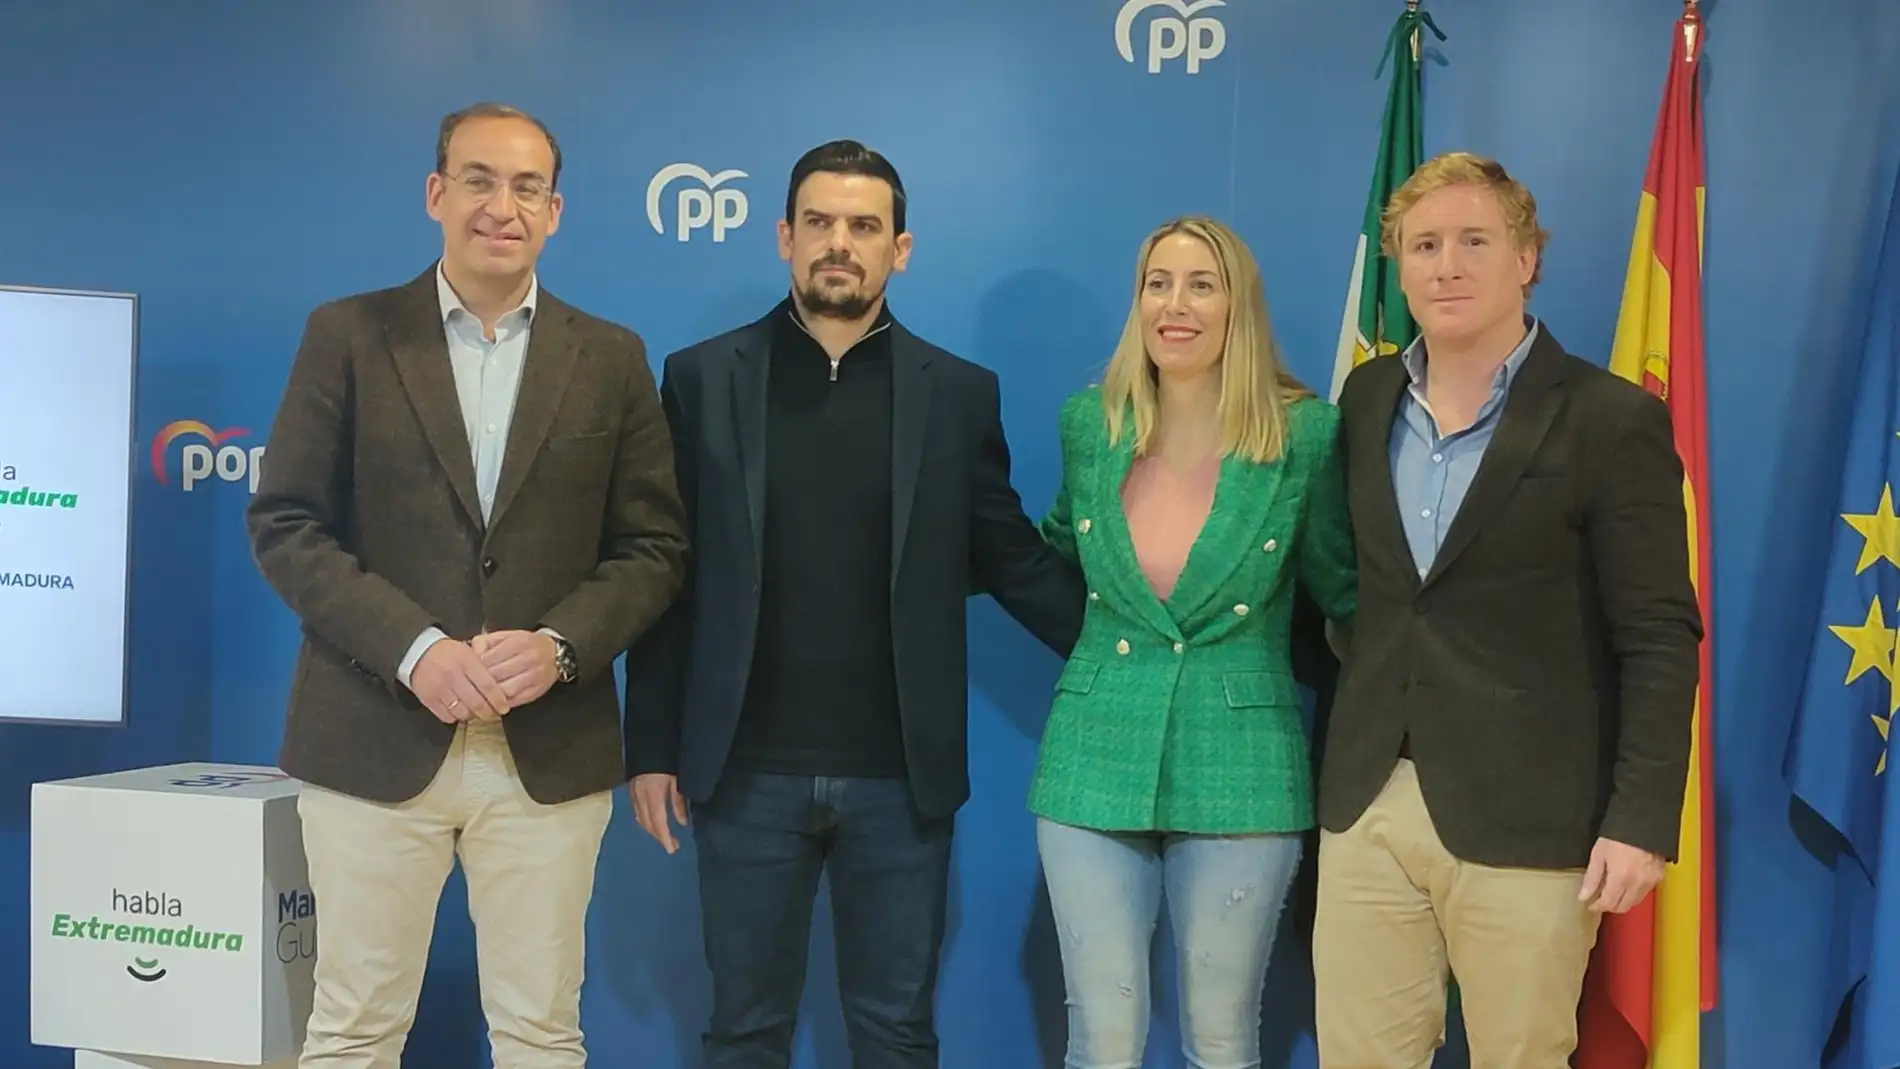 El PP aglutina en una "misma voz" a Mérida, Cáceres y Badajoz para reivindicar las "grandes carencias" de Extremadura